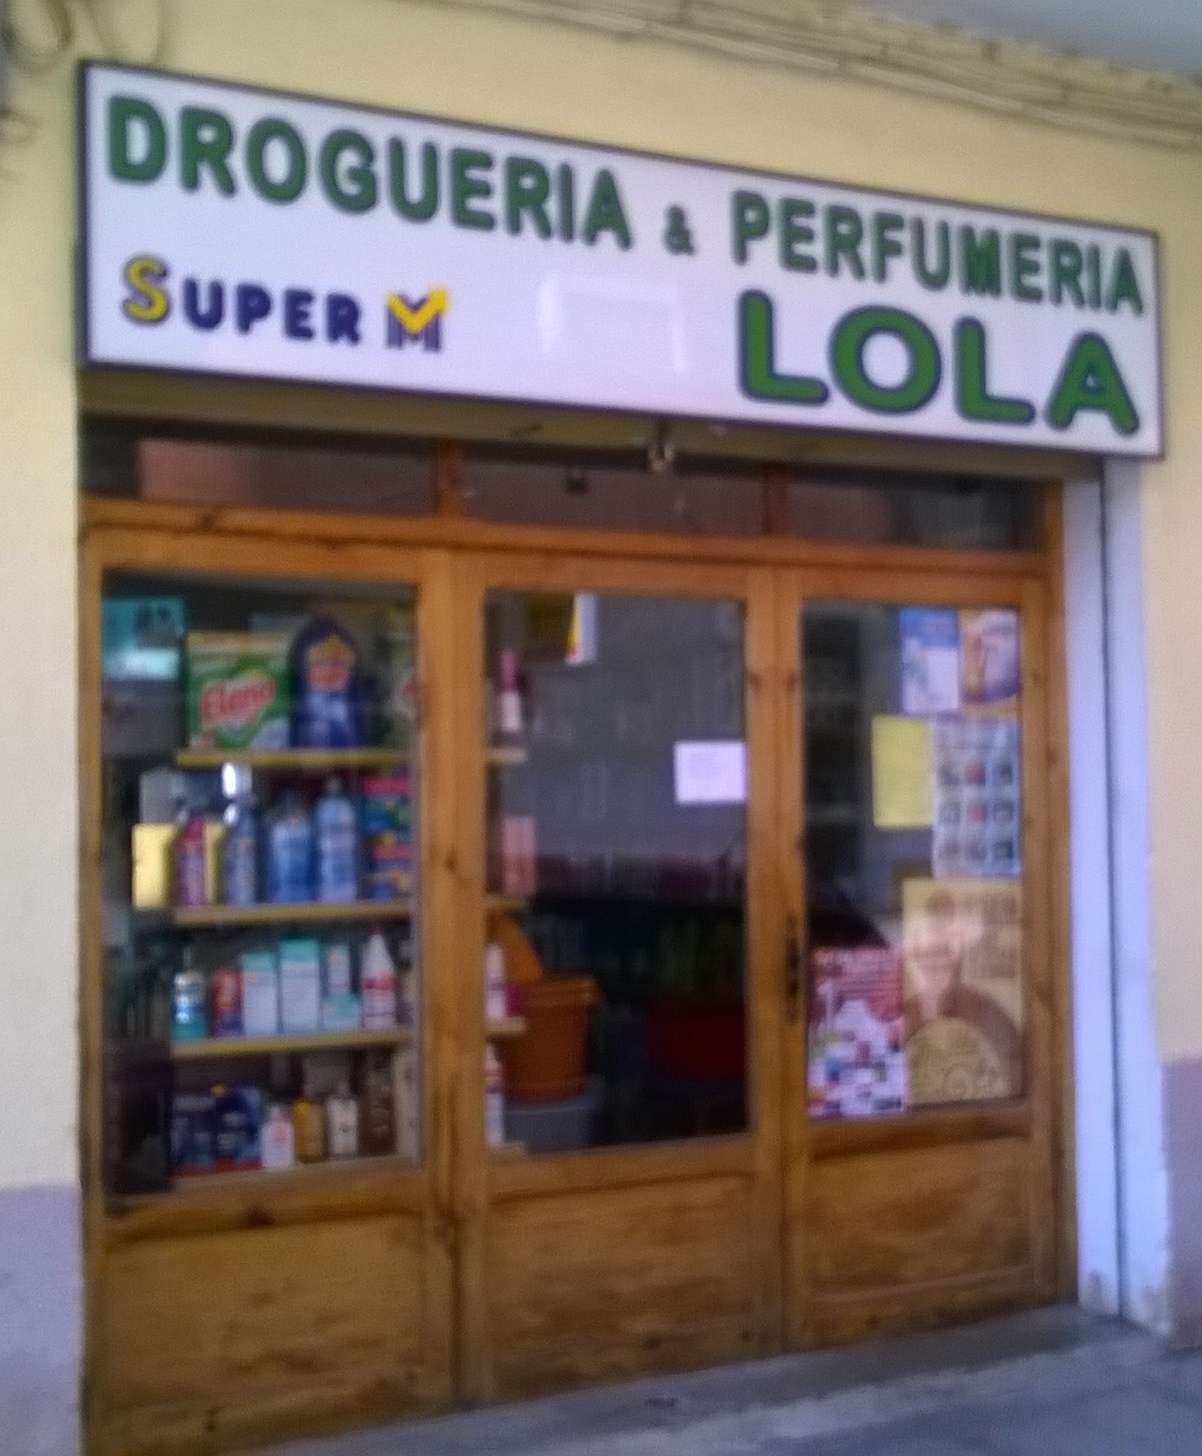 Drogería-Perfumería Lola